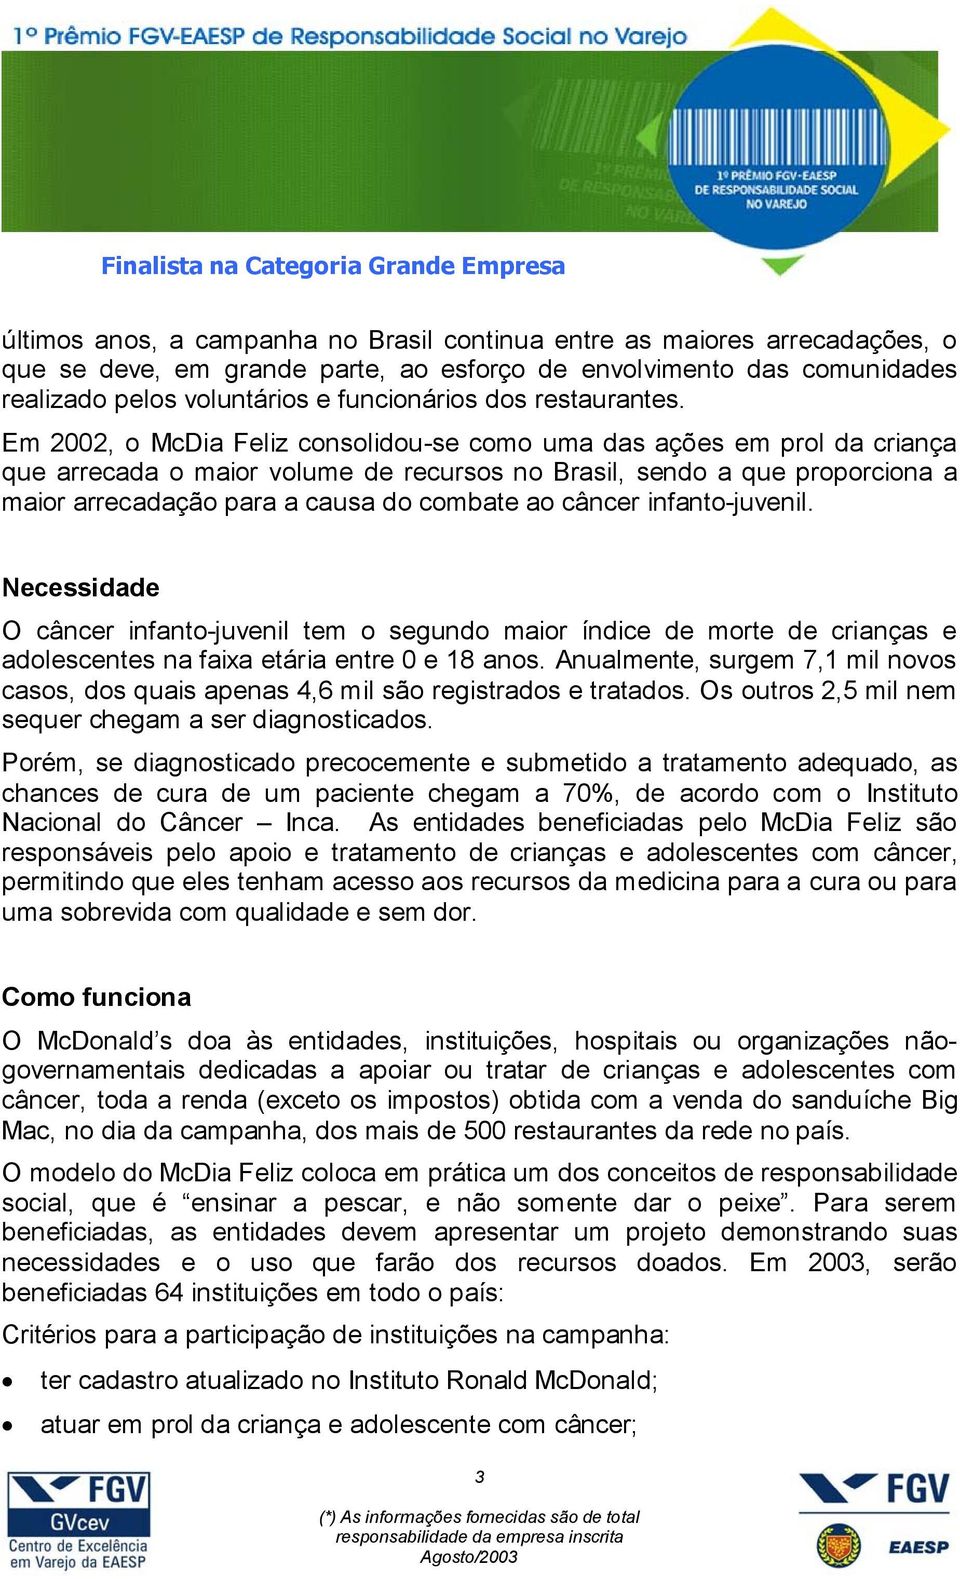 Em 2002, o McDia Feliz consolidou-se como uma das ações em prol da criança que arrecada o maior volume de recursos no Brasil, sendo a que proporciona a maior arrecadação para a causa do combate ao